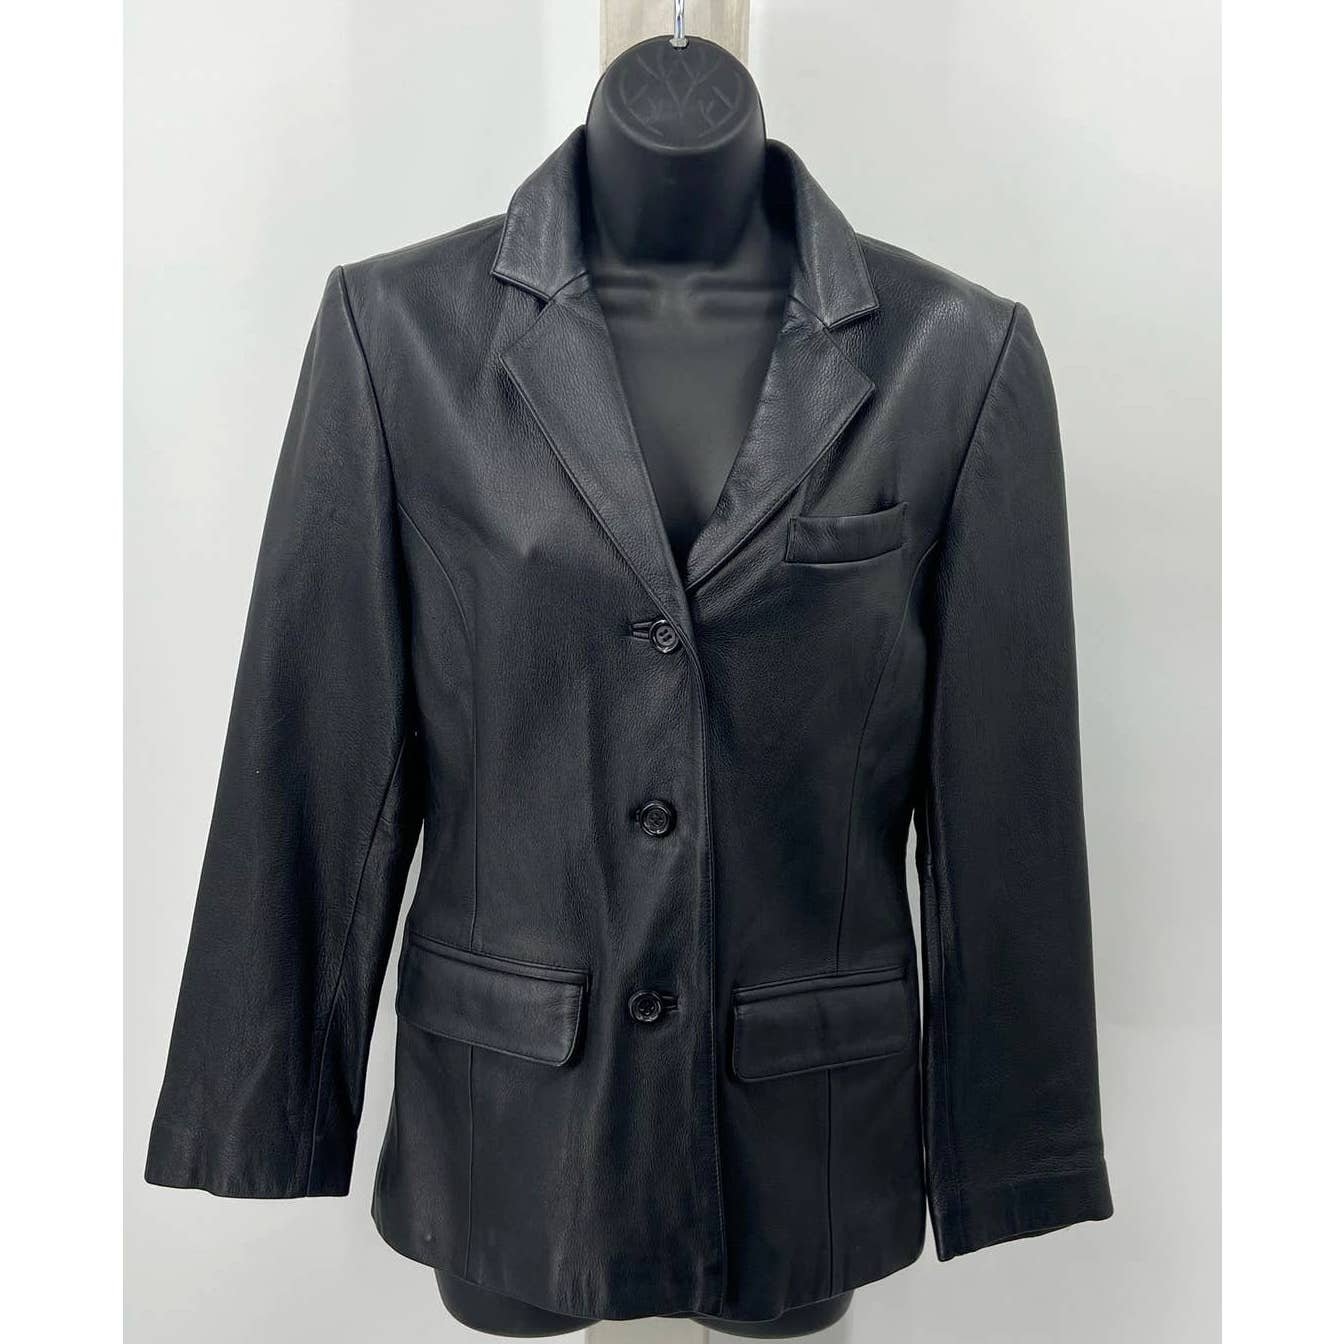 Special offer  Black Vintage Genuine Leather 3 Button Jacket- Blazer OUFEKBY3h outlet online shop